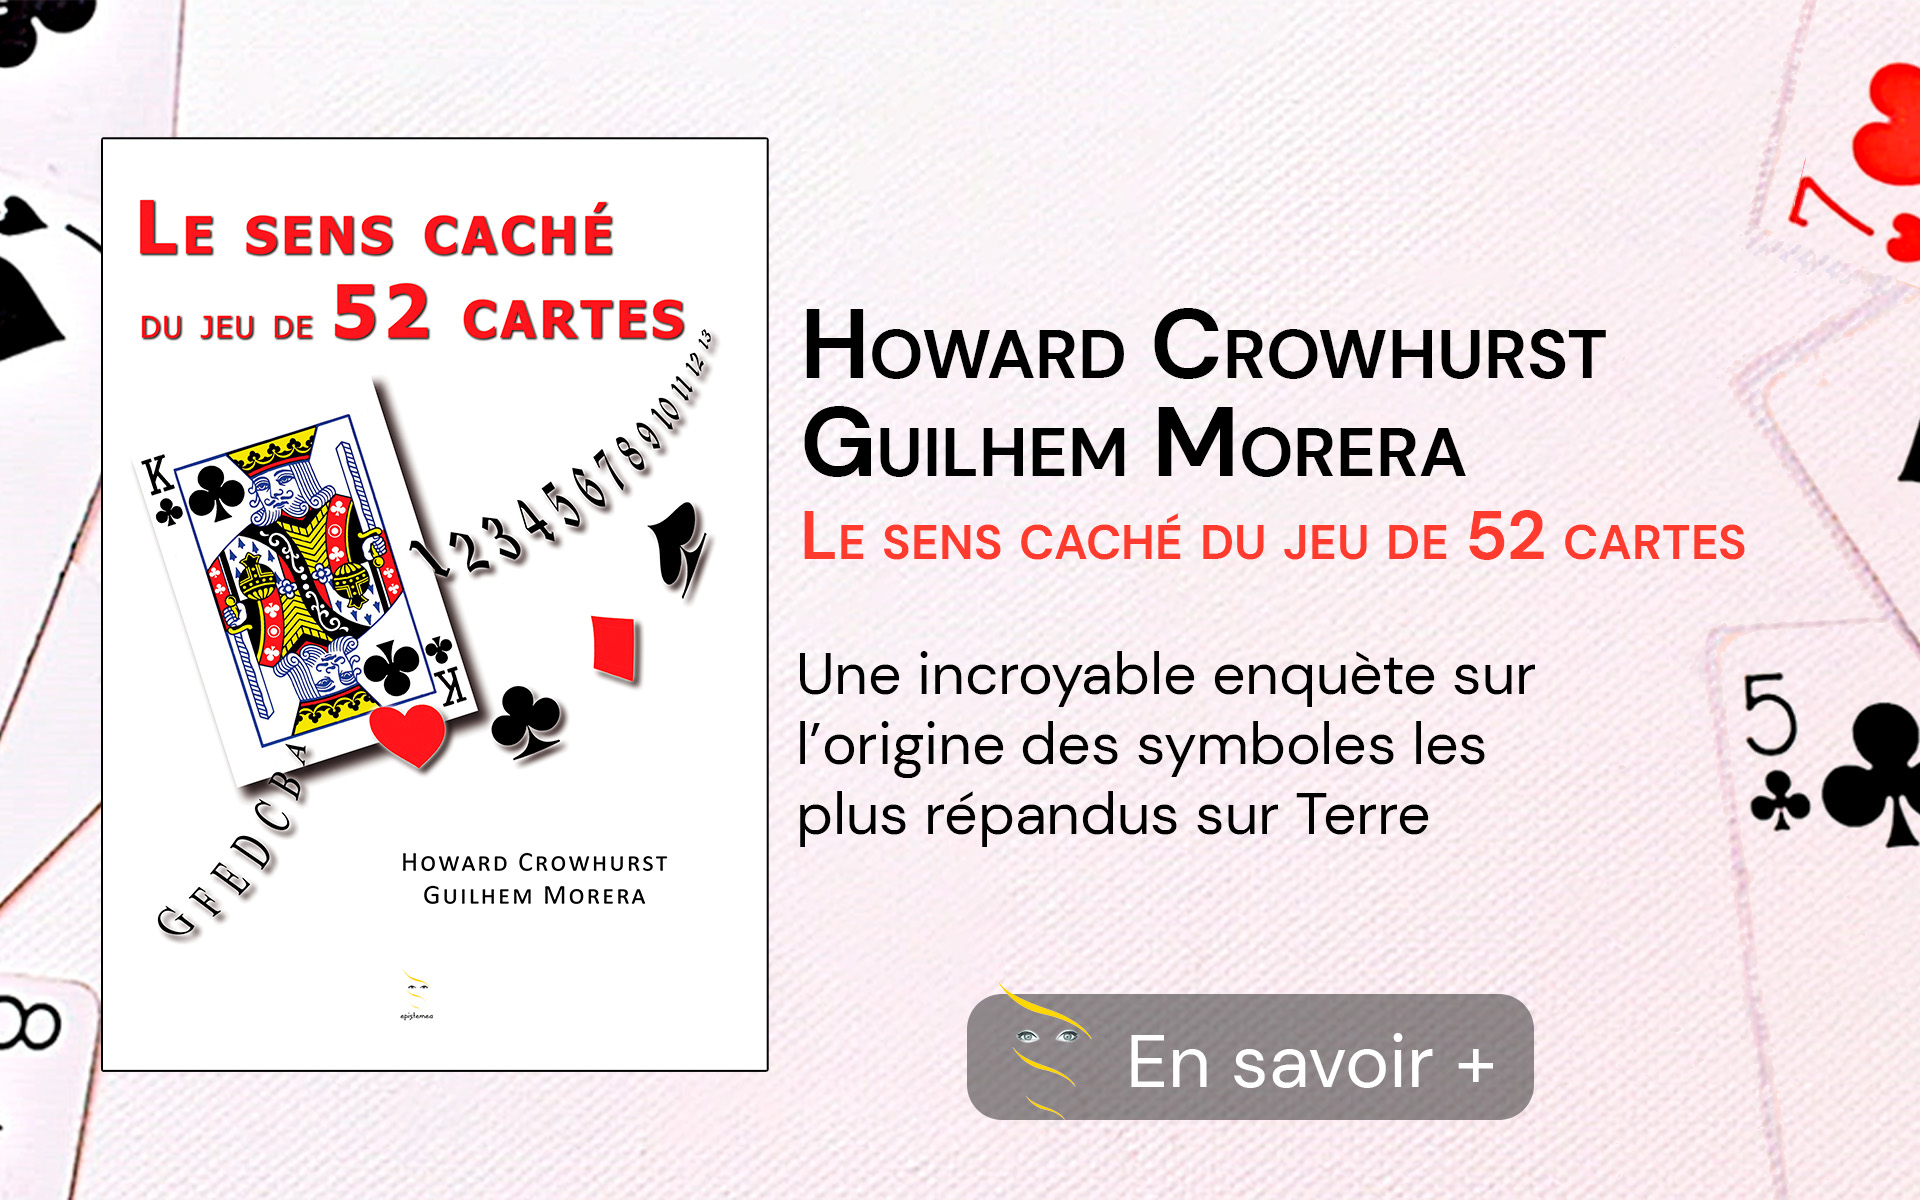 Présentation et couverture de livre Le Sens Caché du Jeu de 52 Cartes de Howard Crowhurst et Guilhem Morera